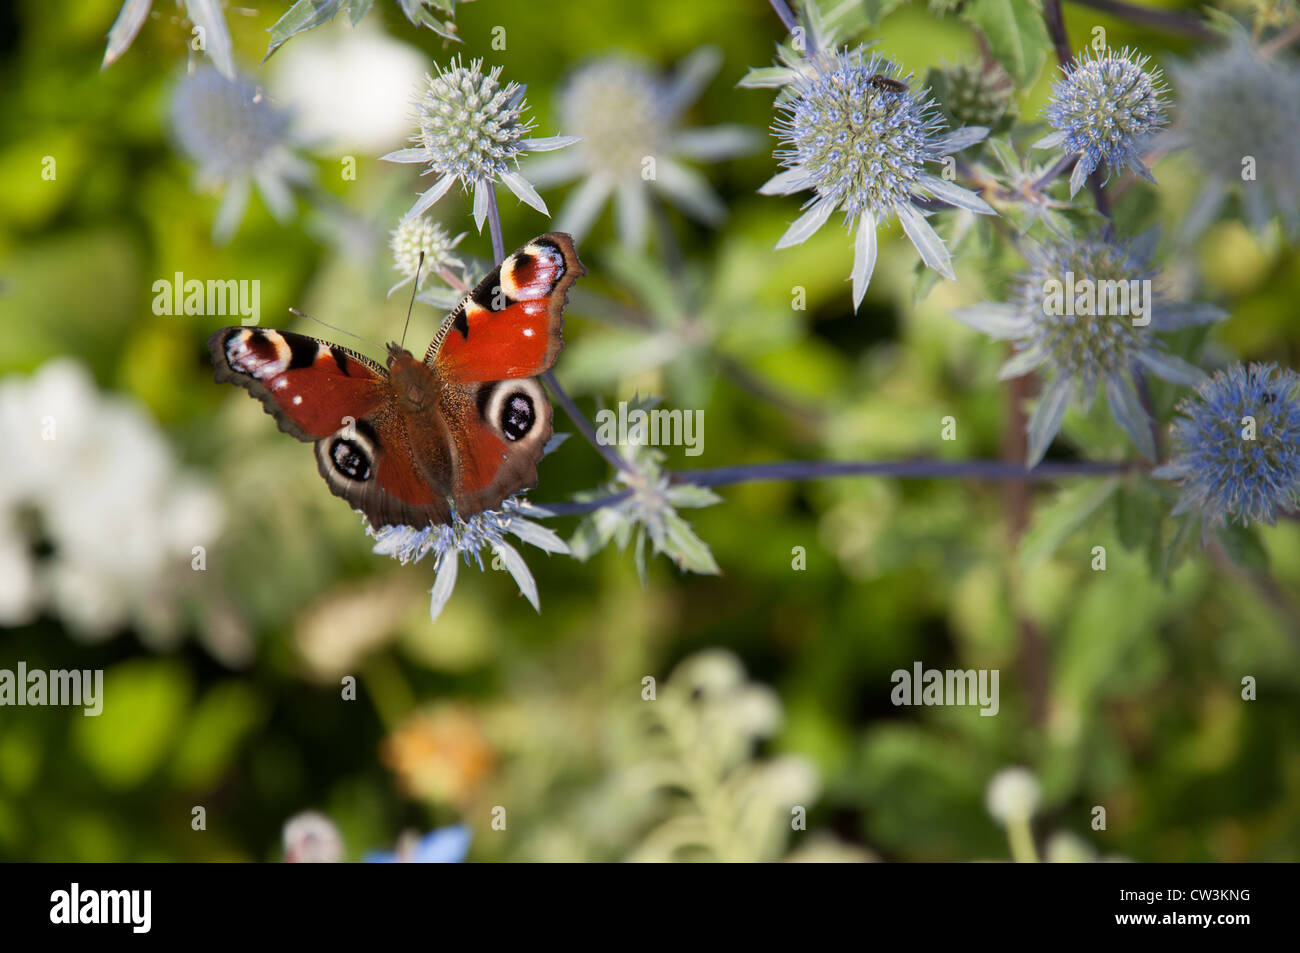 Beau papillon paon européen reposant sur un globe thistle flower Banque D'Images